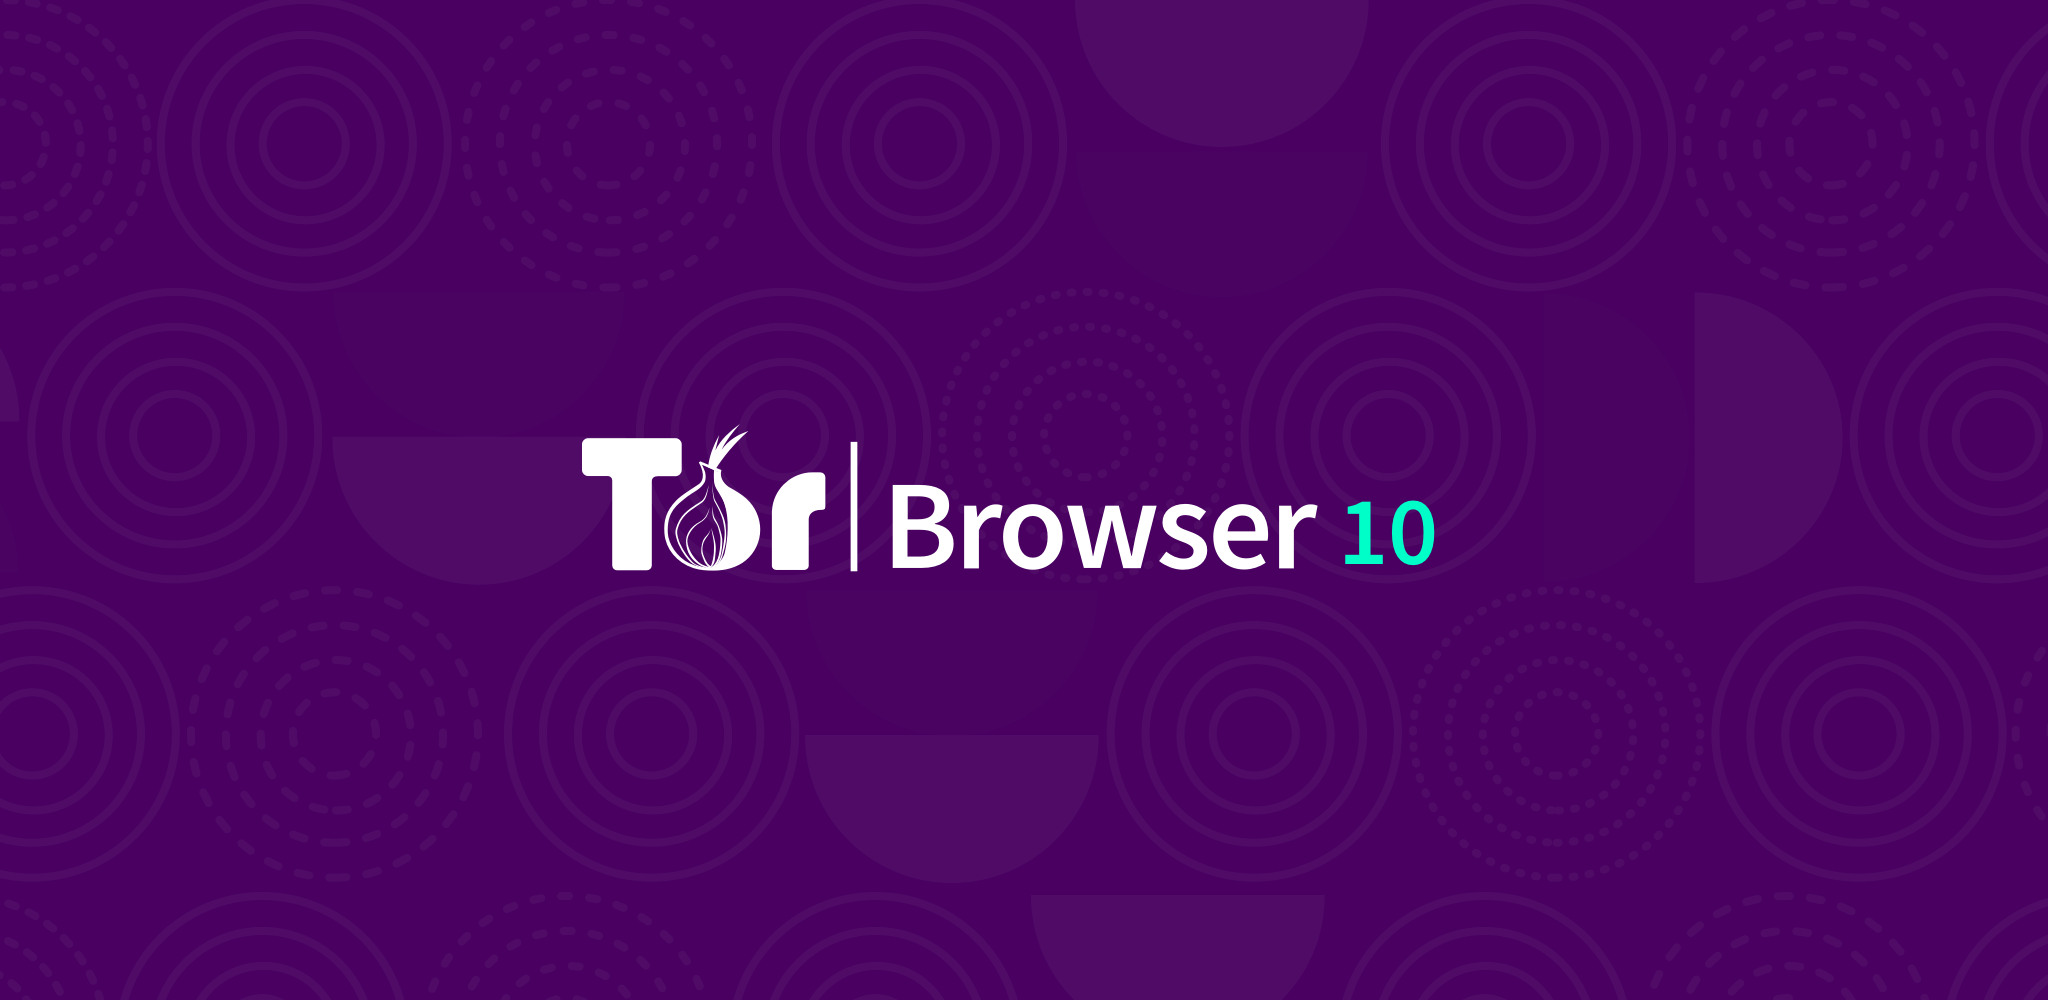 Tor browser официальная mega vidalia bundle tor browser mega